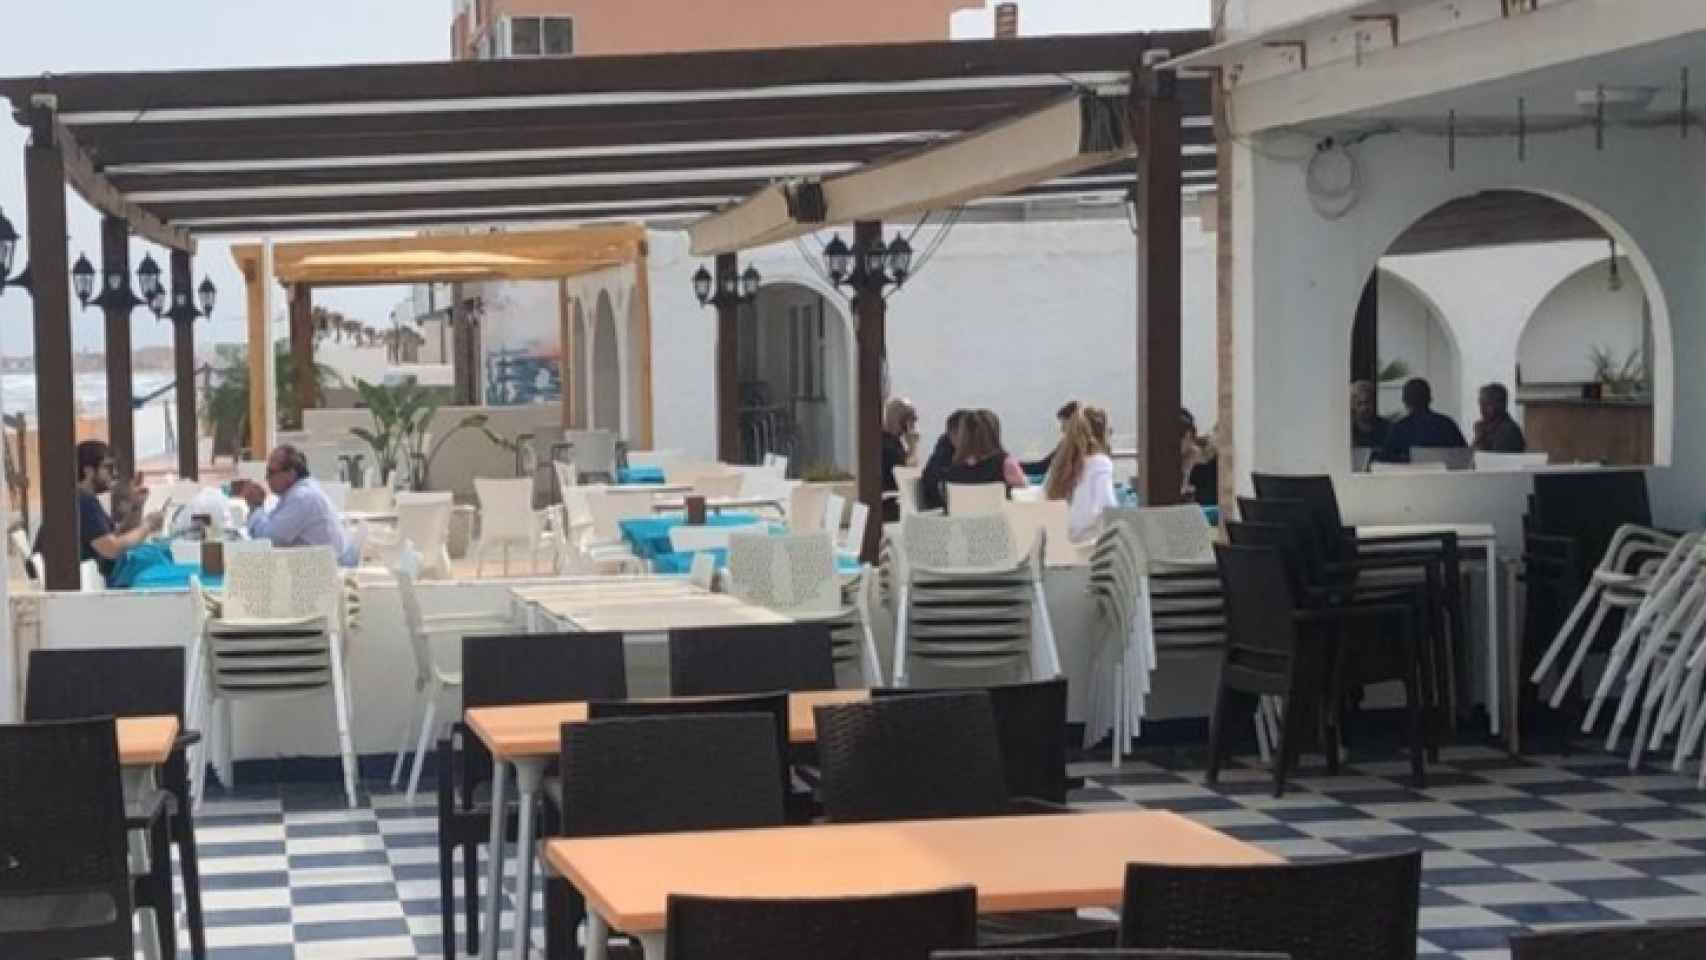 Turistas madrileños disfrutando este viernes de una comida en un chiringuito en primera línea de playa en La Manga el pasado mes de marzo.